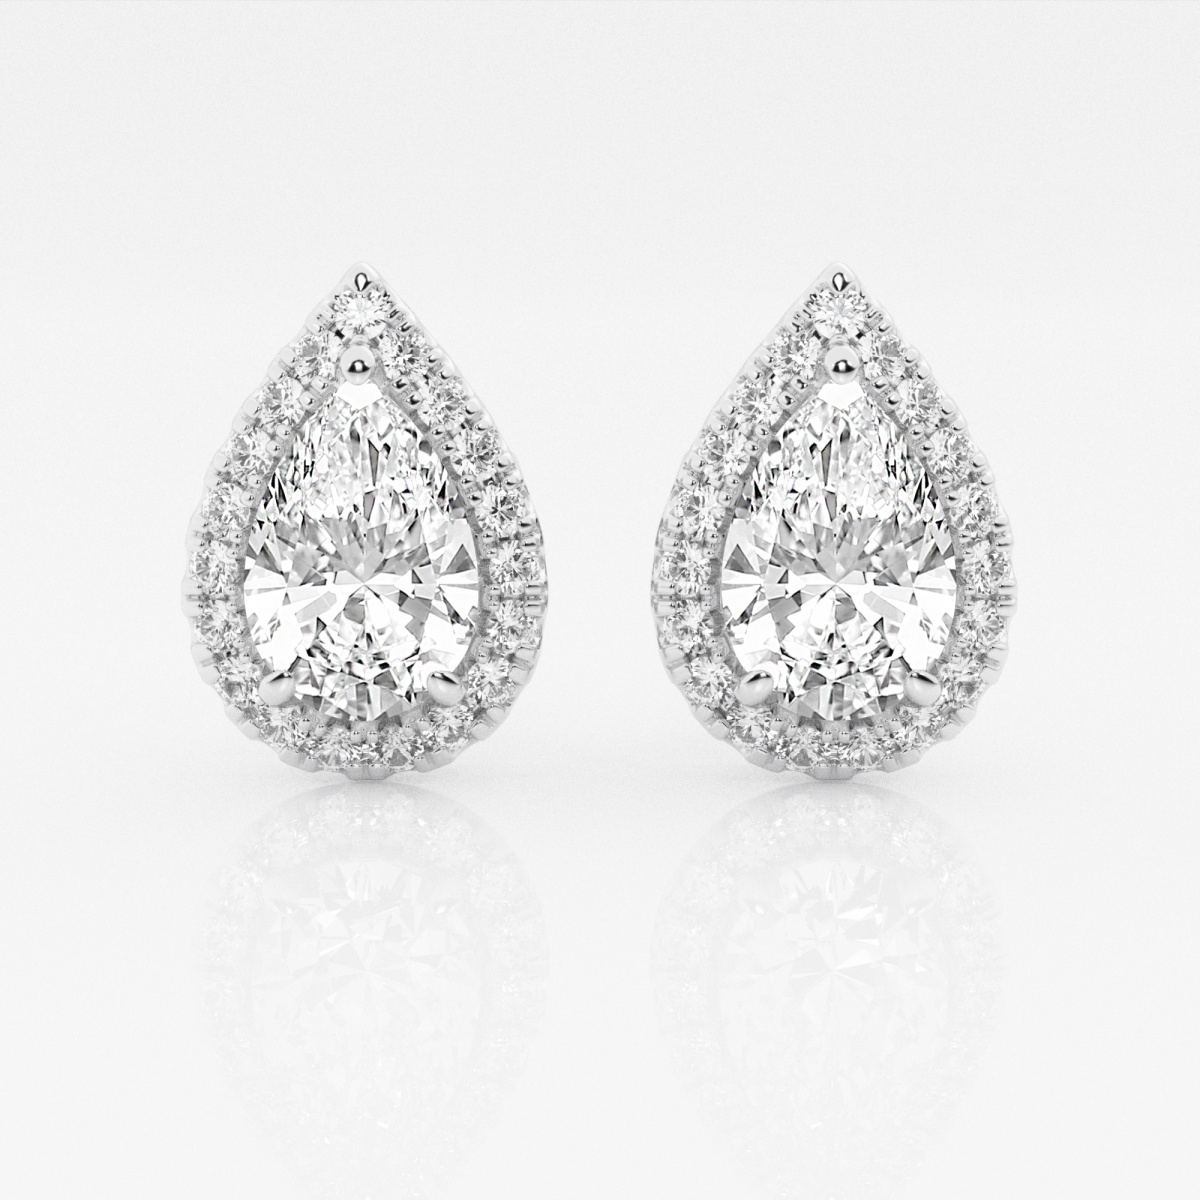 3 1/2 ctw Pear Lab Grown Diamond Halo Certified Stud Earrings